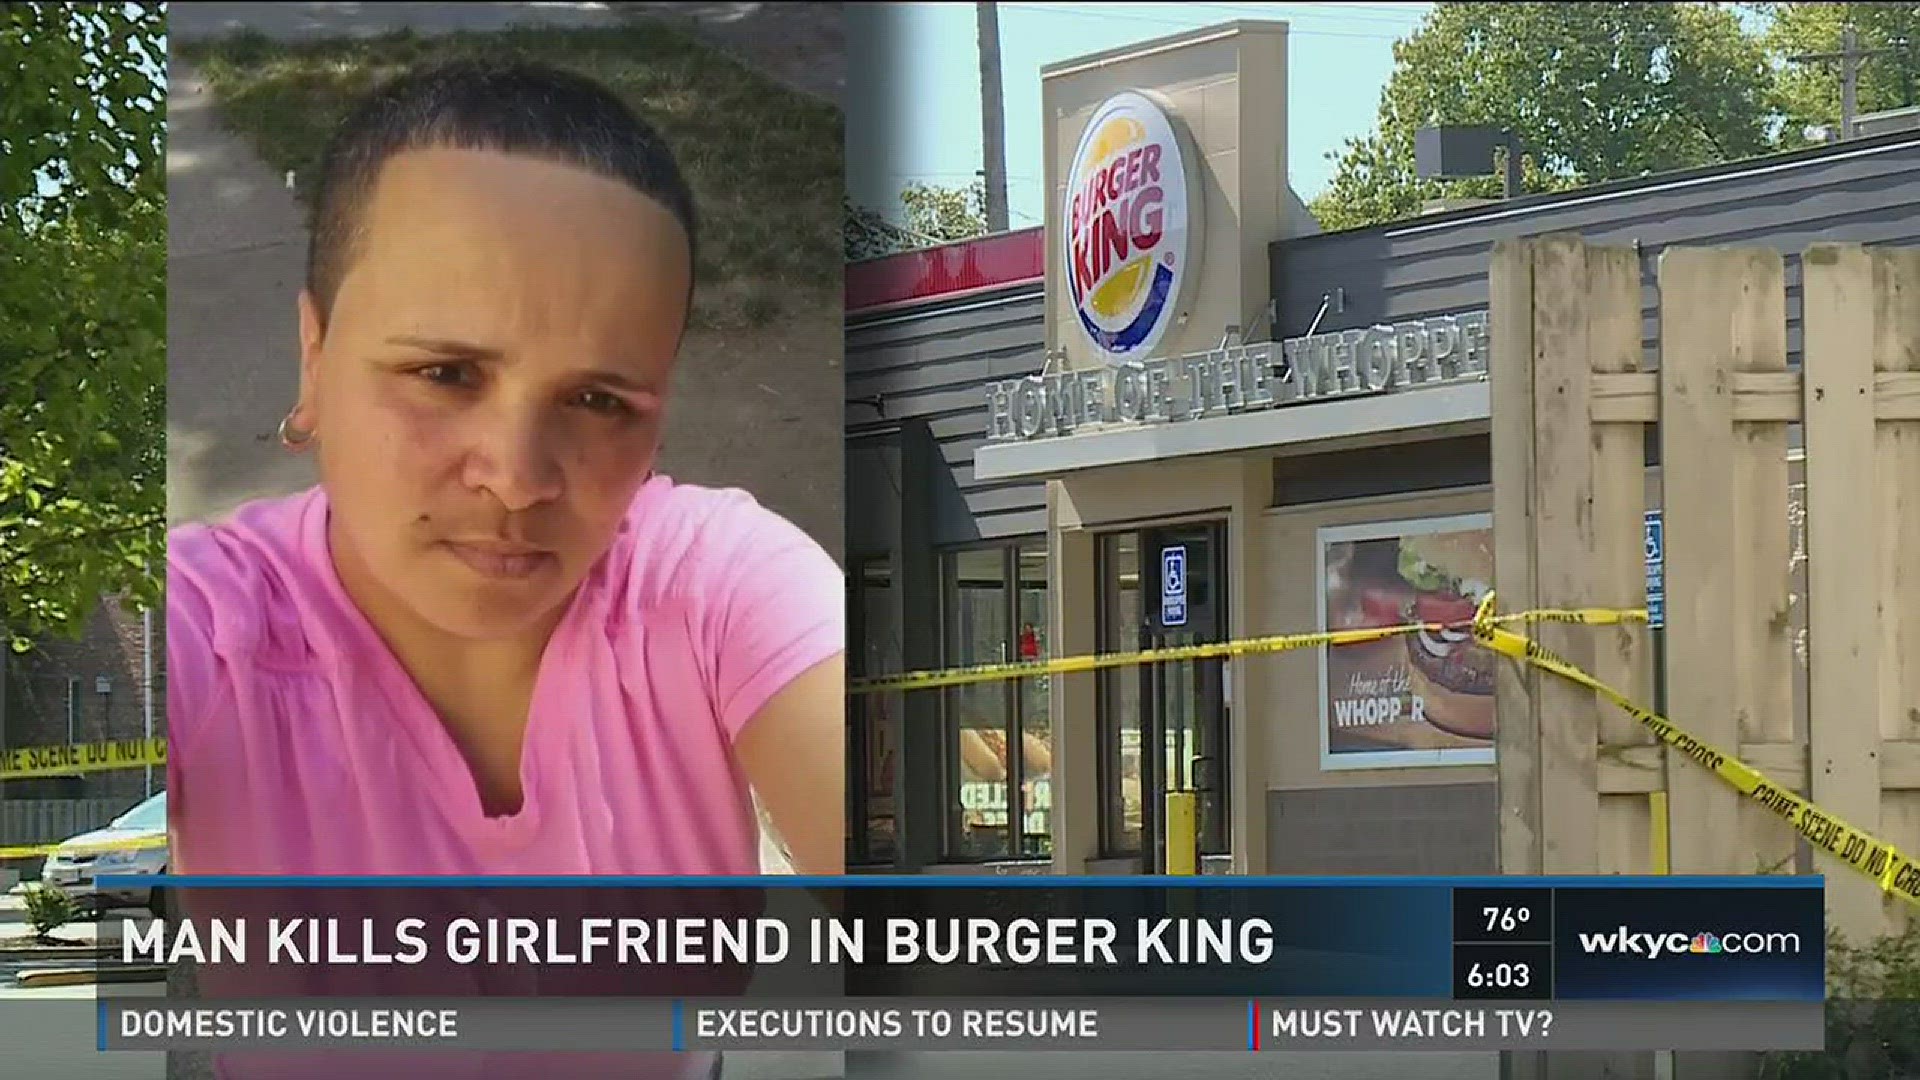 Man kills girlfriend at Burger King